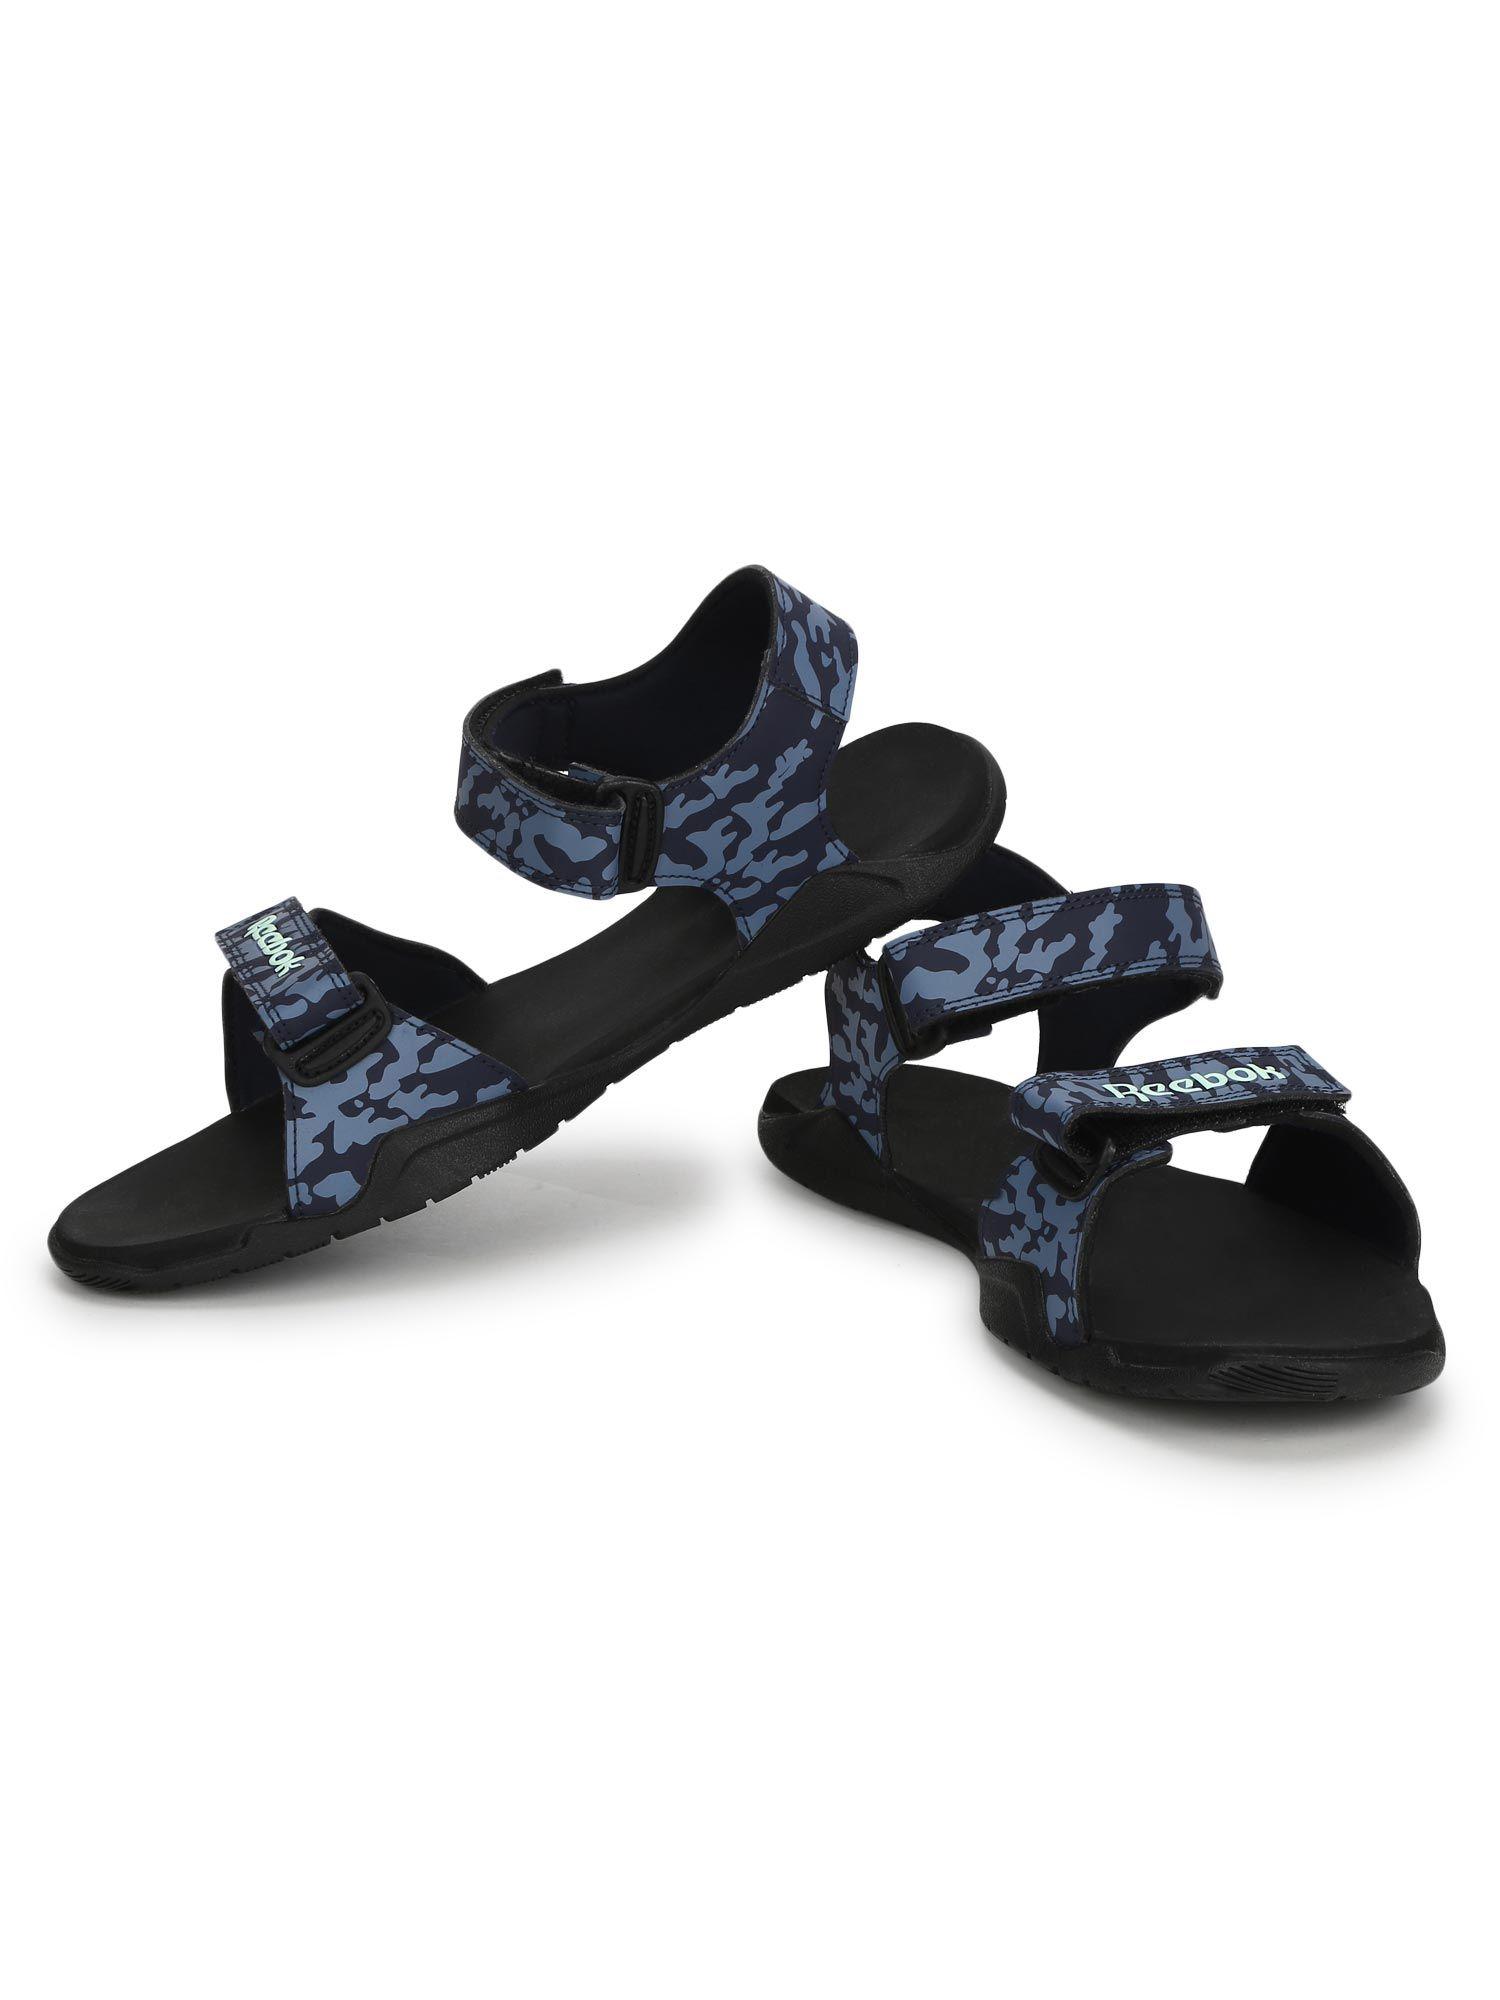 milo-sandal-navy-blue-swim-sandal